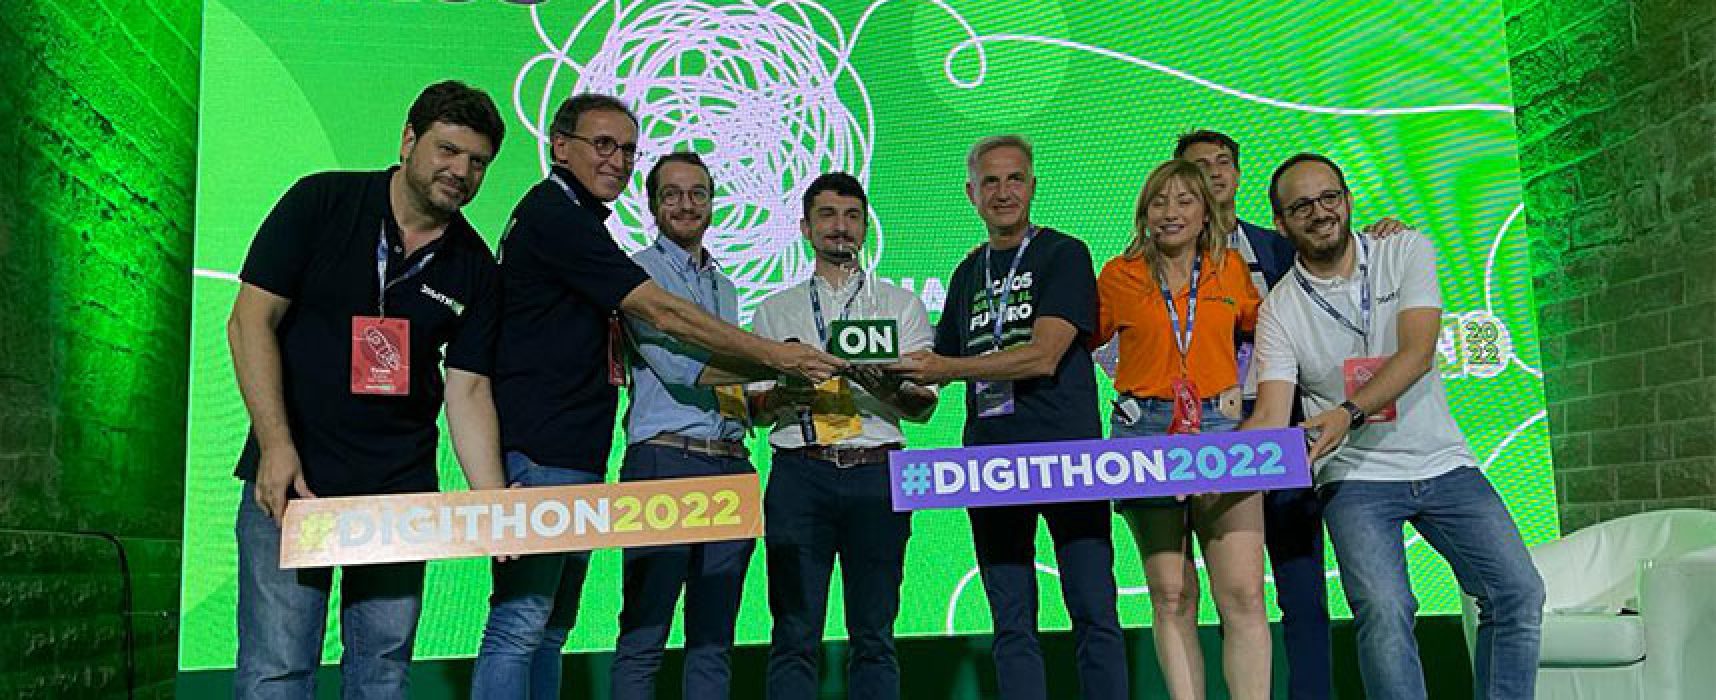 La startup piacentina Cshark vince il Premio DigithON 2022 / FOTO